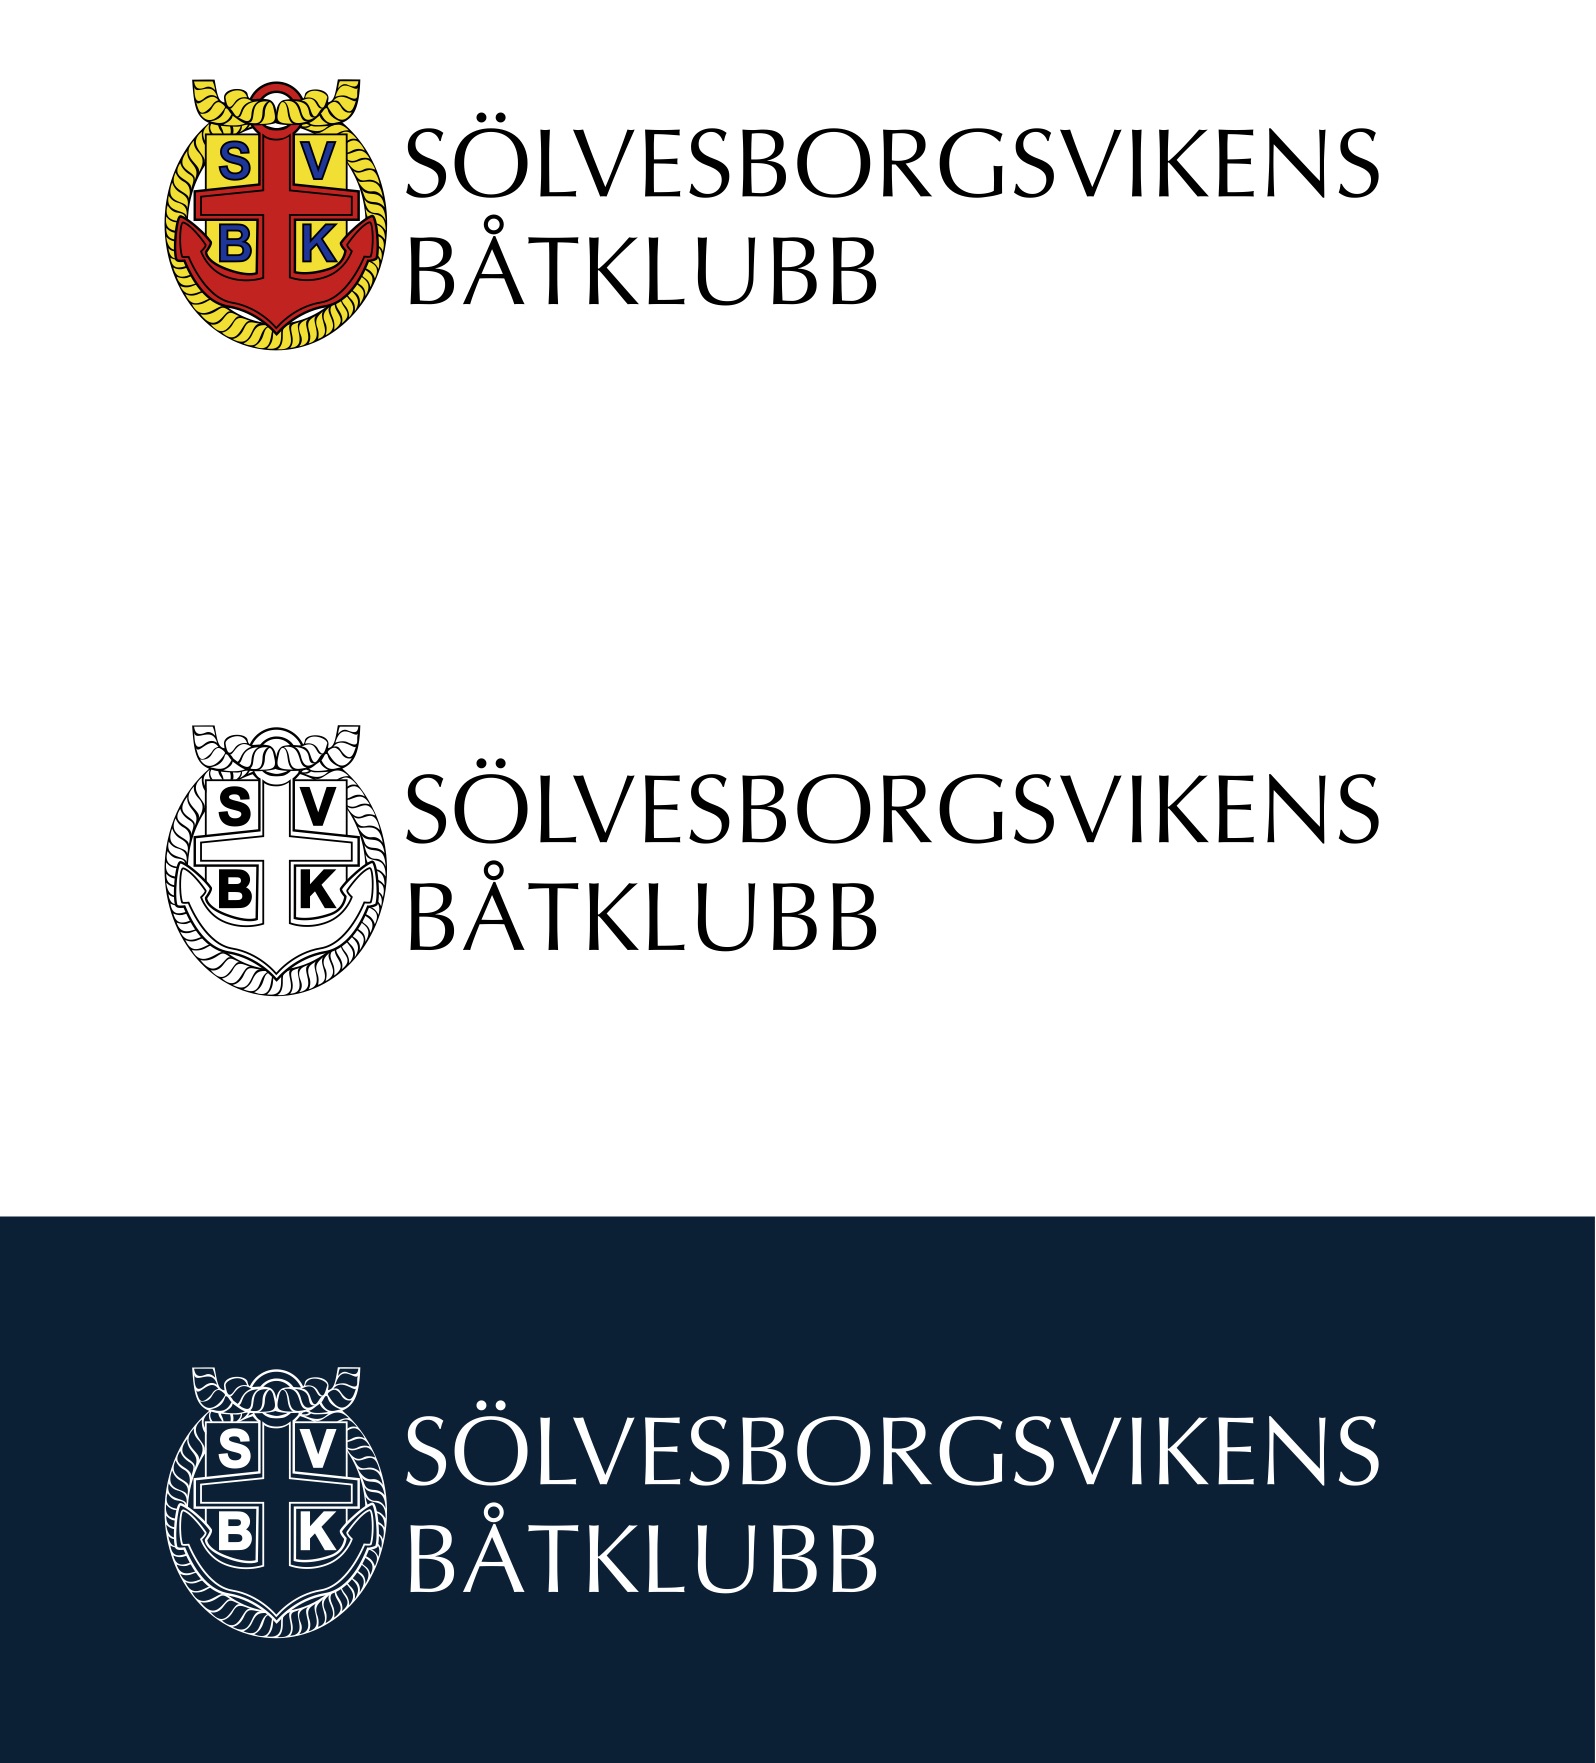 SVBK_logo_sammanställning